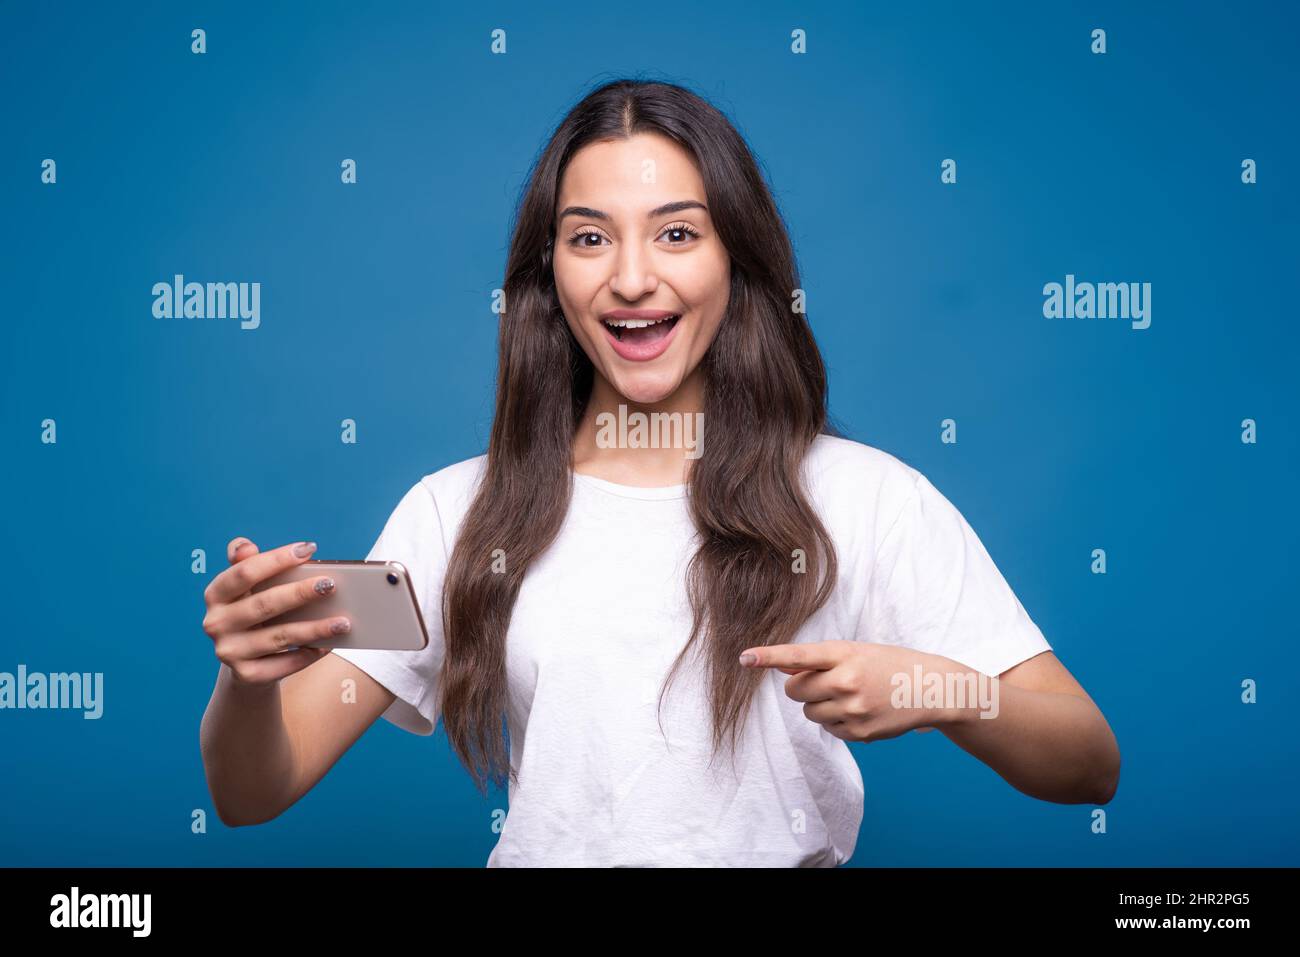 Bella ragazza bruna caucasica o araba in una t-shirt bianca è scioccata mentre si gioca su un telefono cellulare e puntando il dito su un'isola smartphone Foto Stock